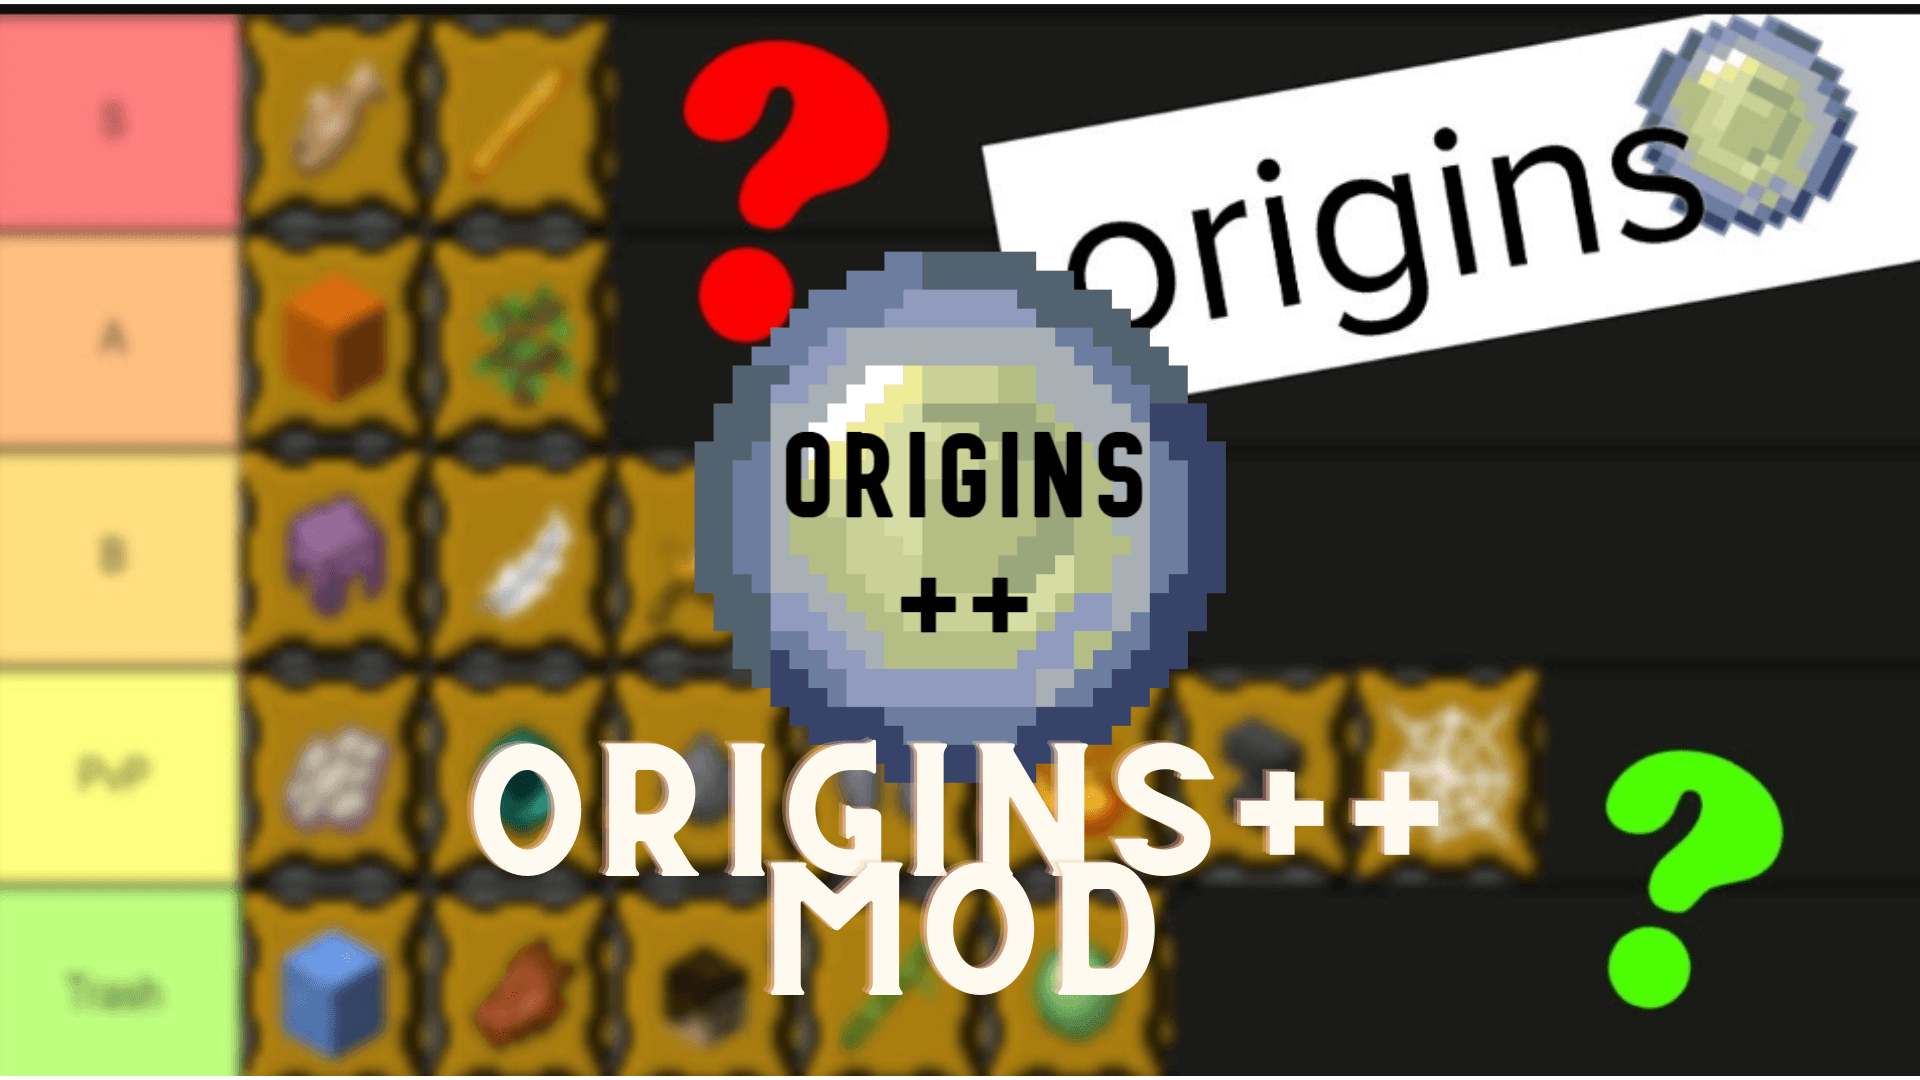 Origins++ Mod